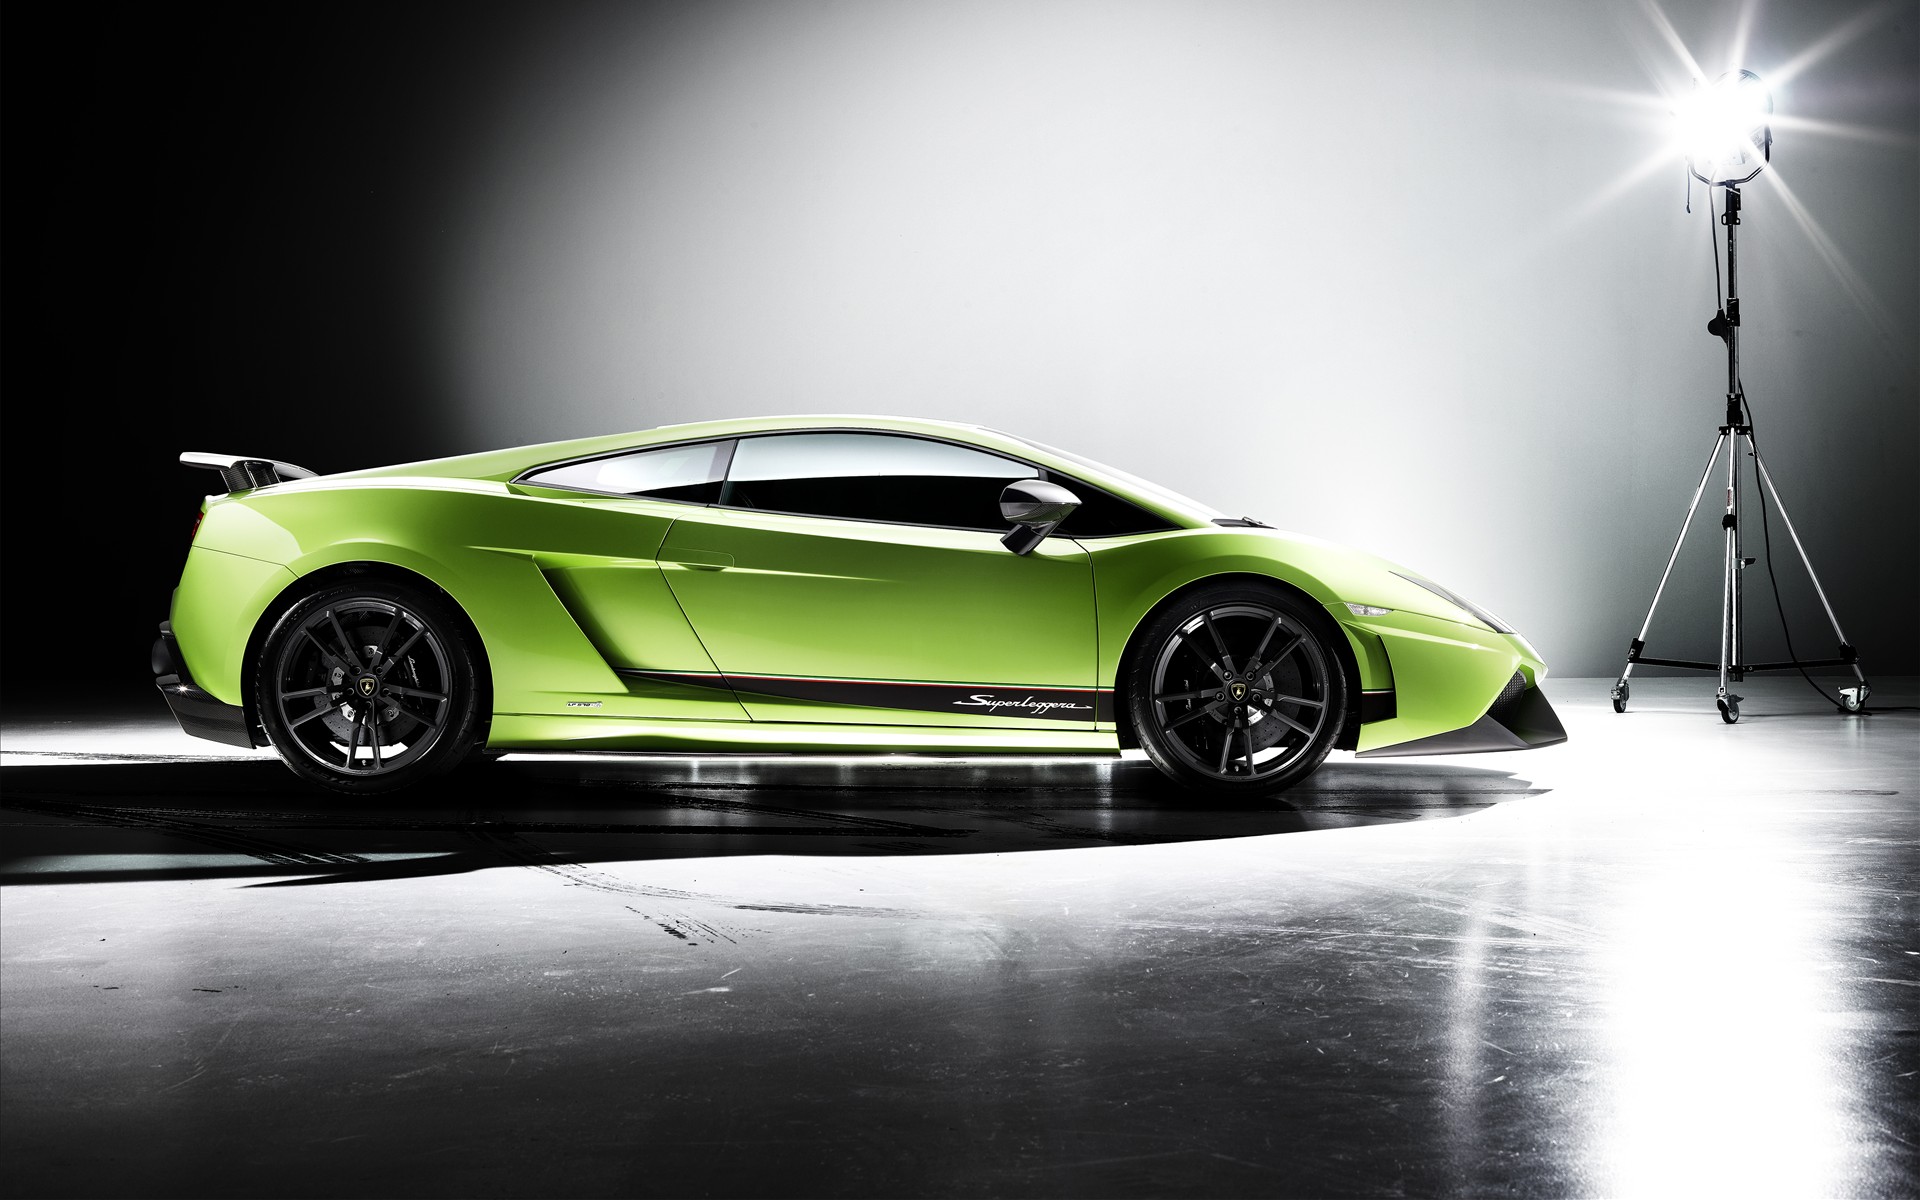 Lamborghini Gallardo Lp570 4 Superleggera , HD Wallpaper & Backgrounds